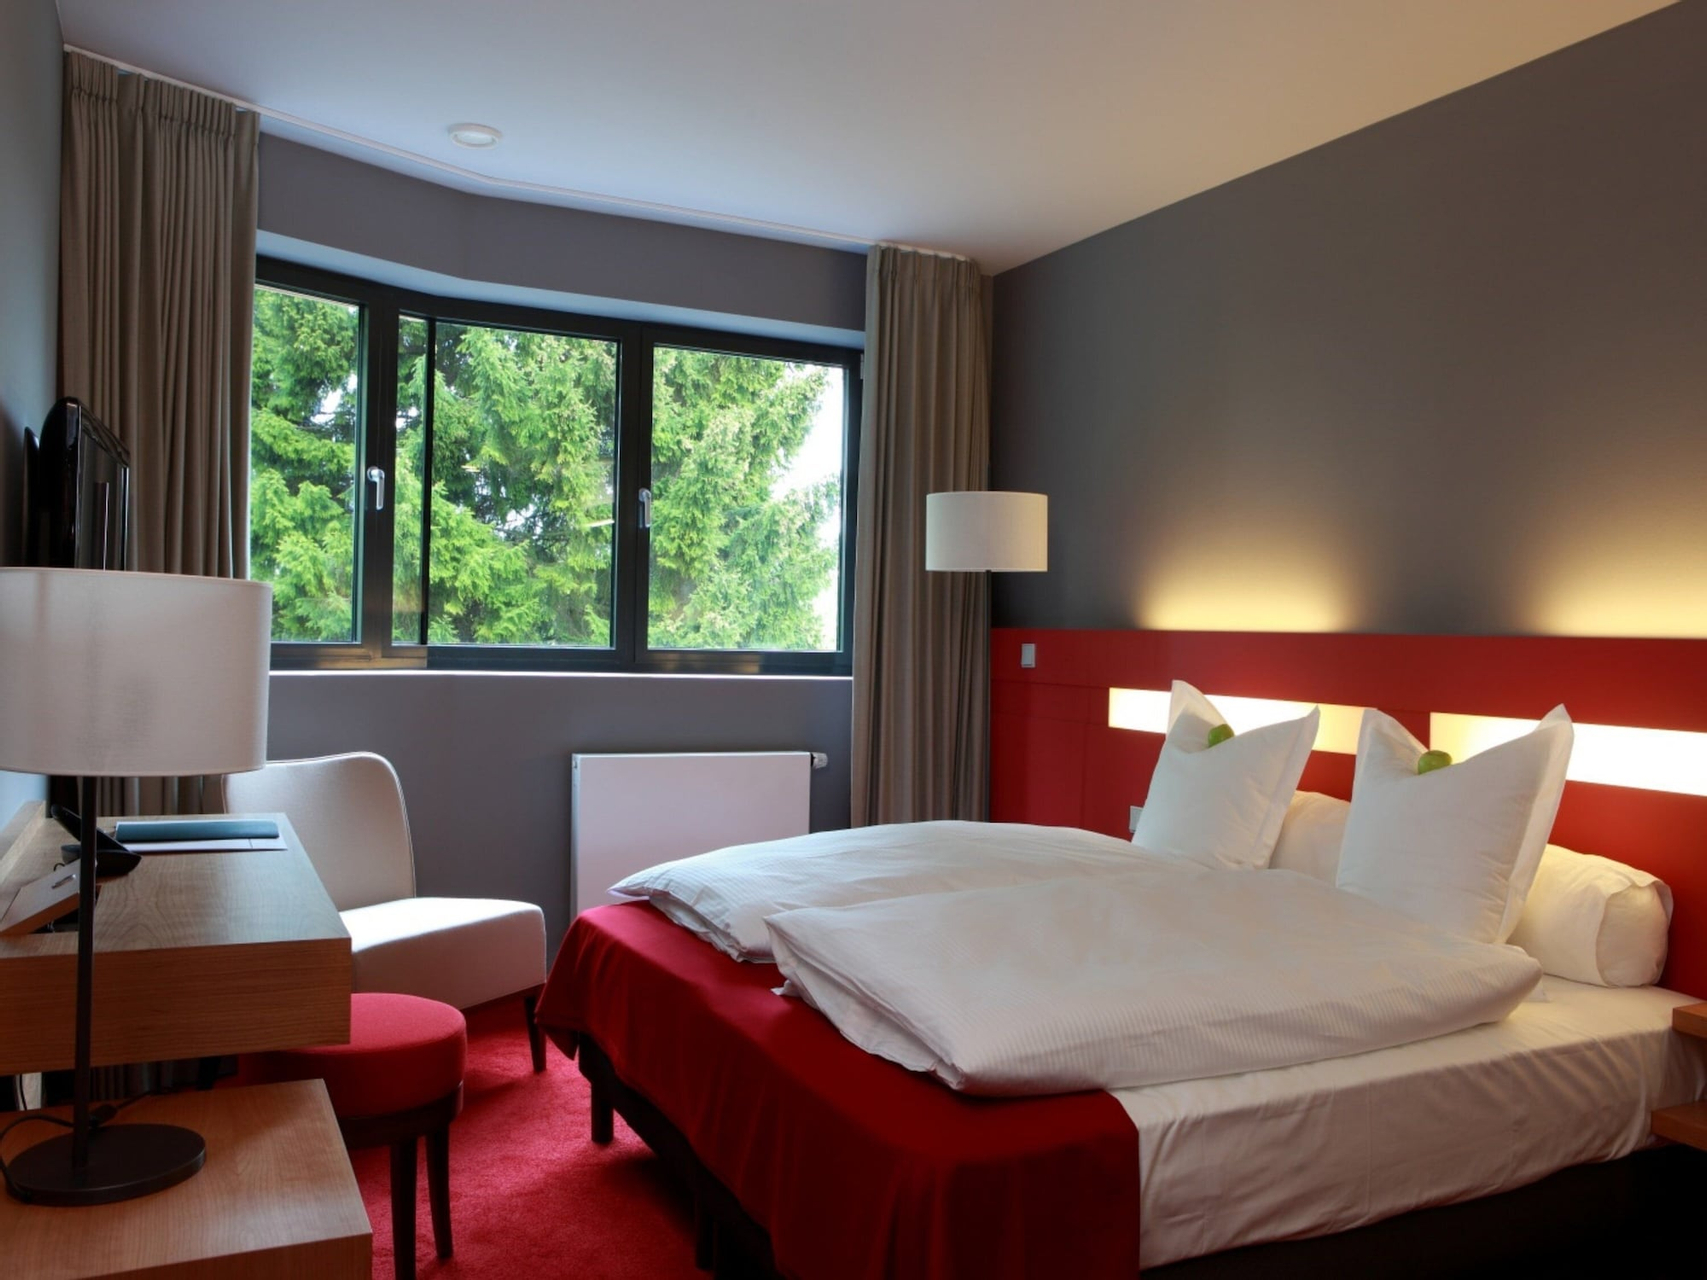 Bedroom 3, The Seven Hotel, Esch-sur-Alzette